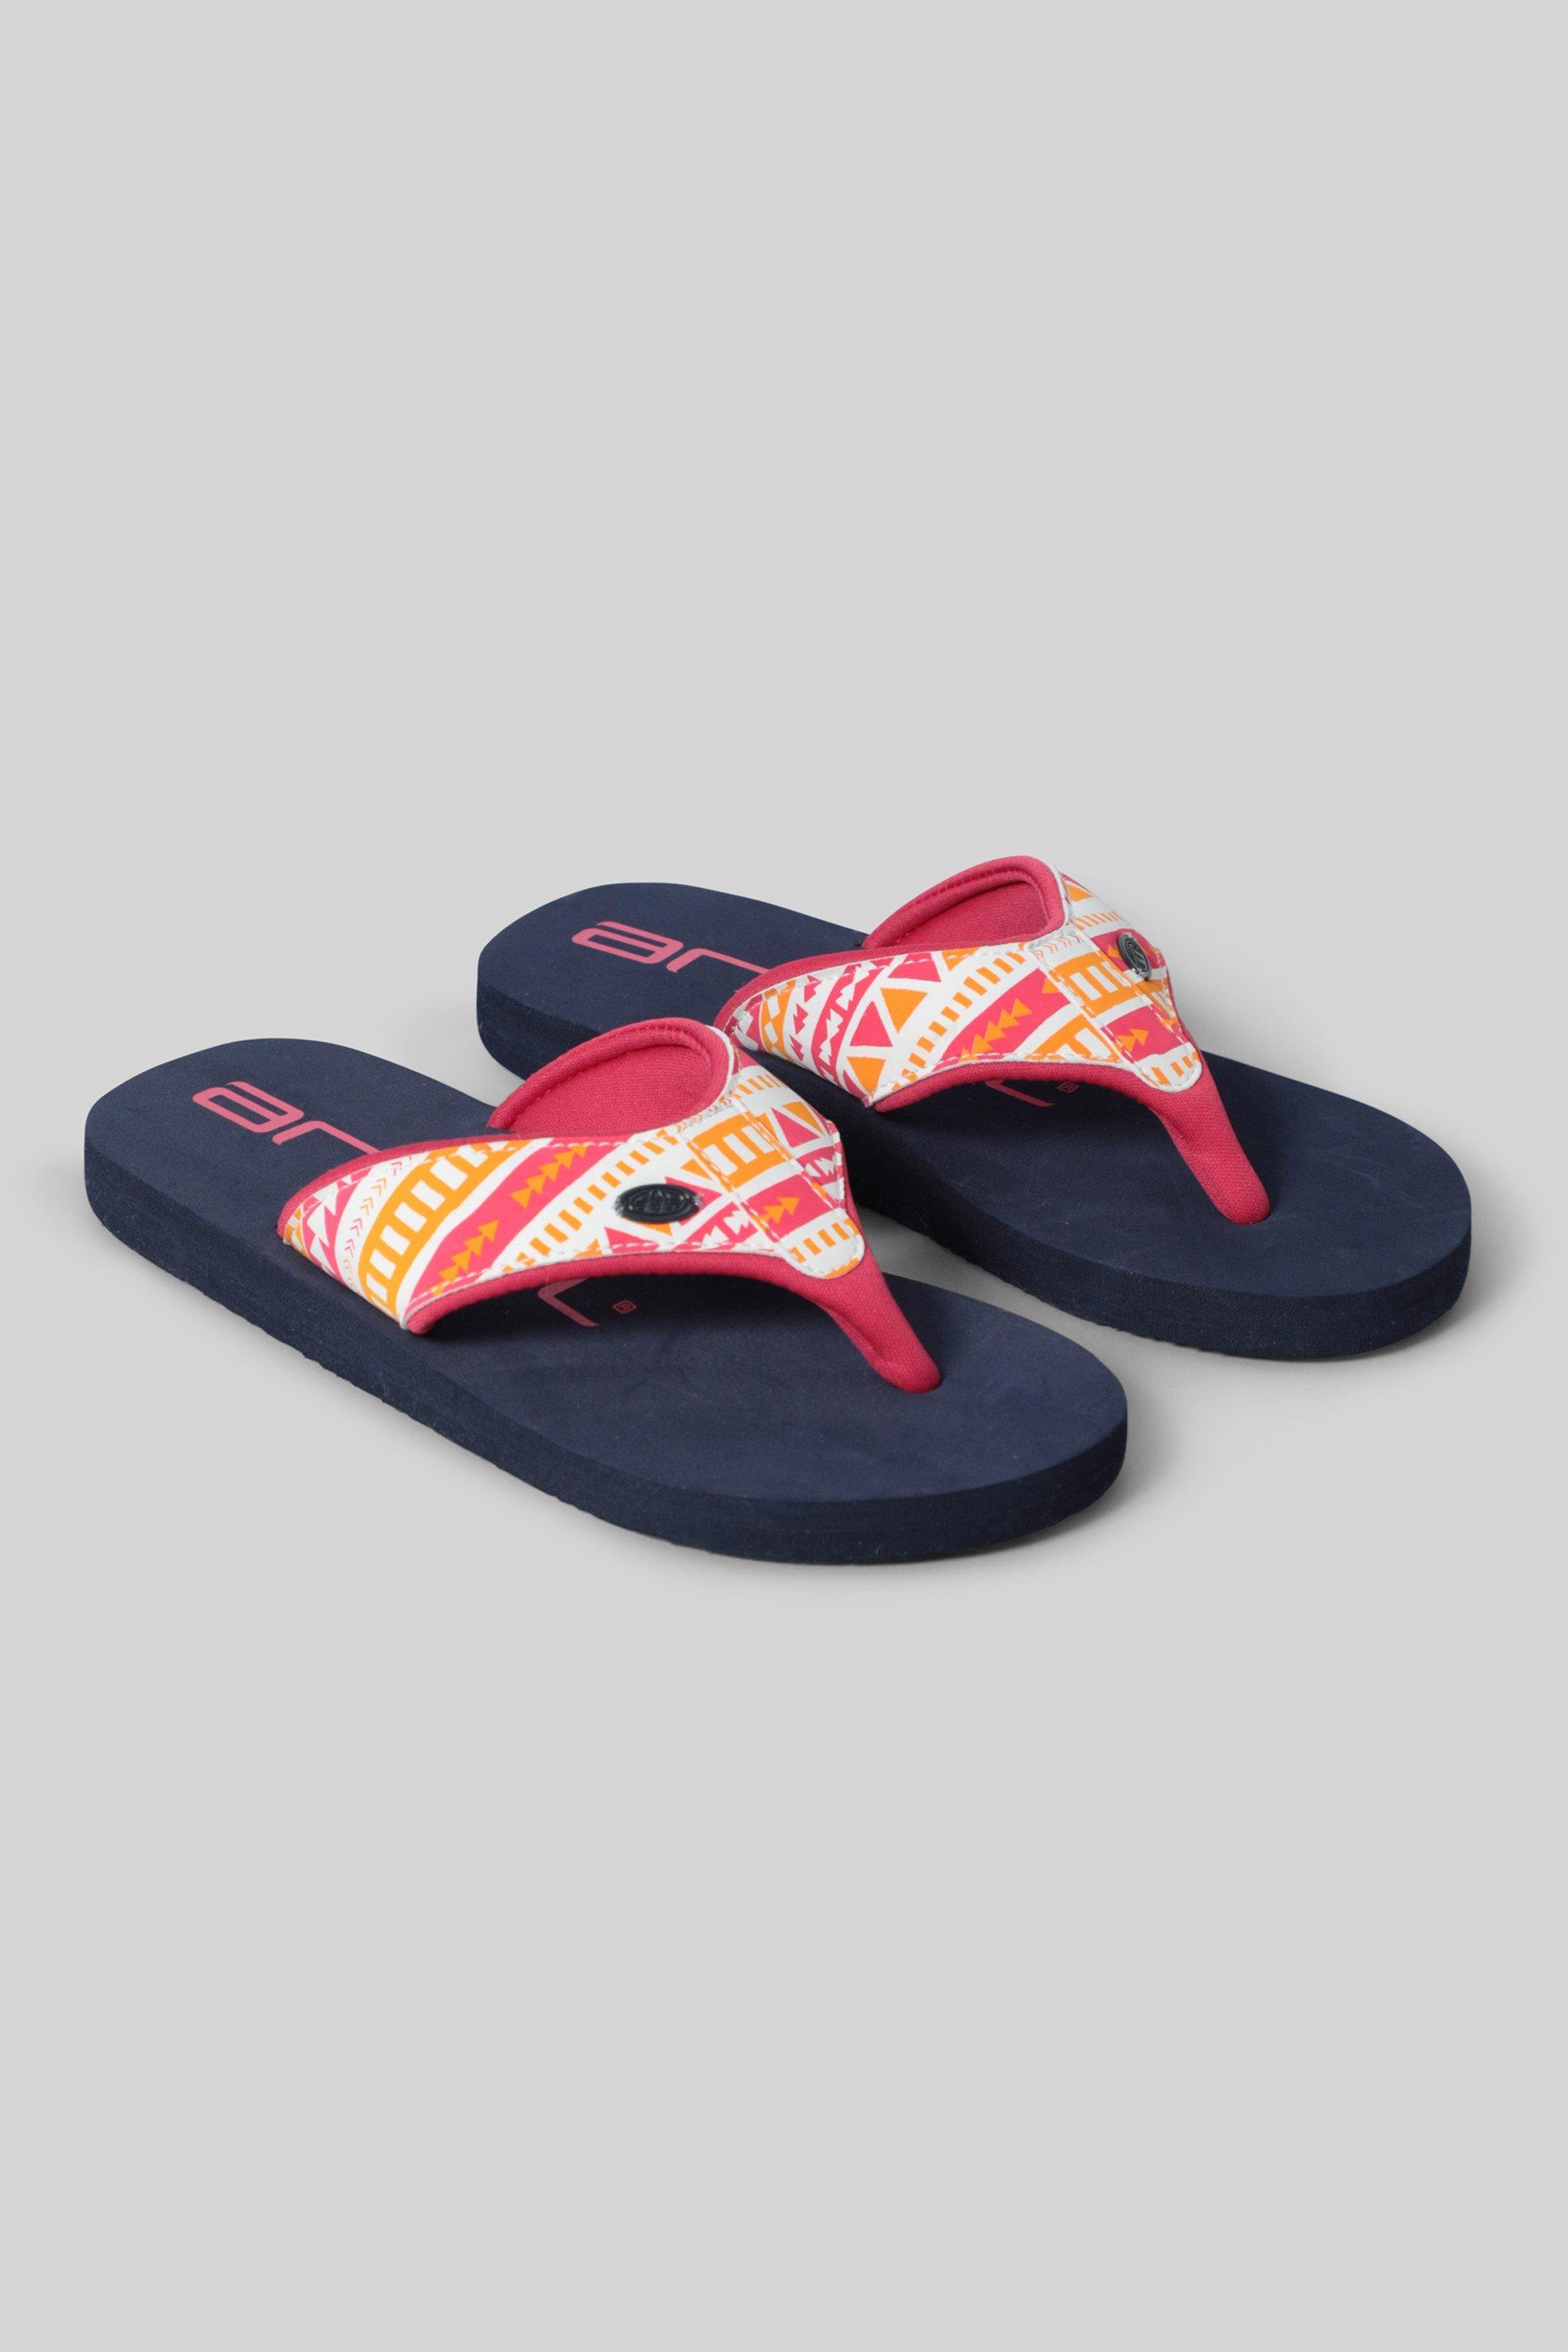 Swish Flip Flop  Beach Summer Recycled Sandals Lightweight